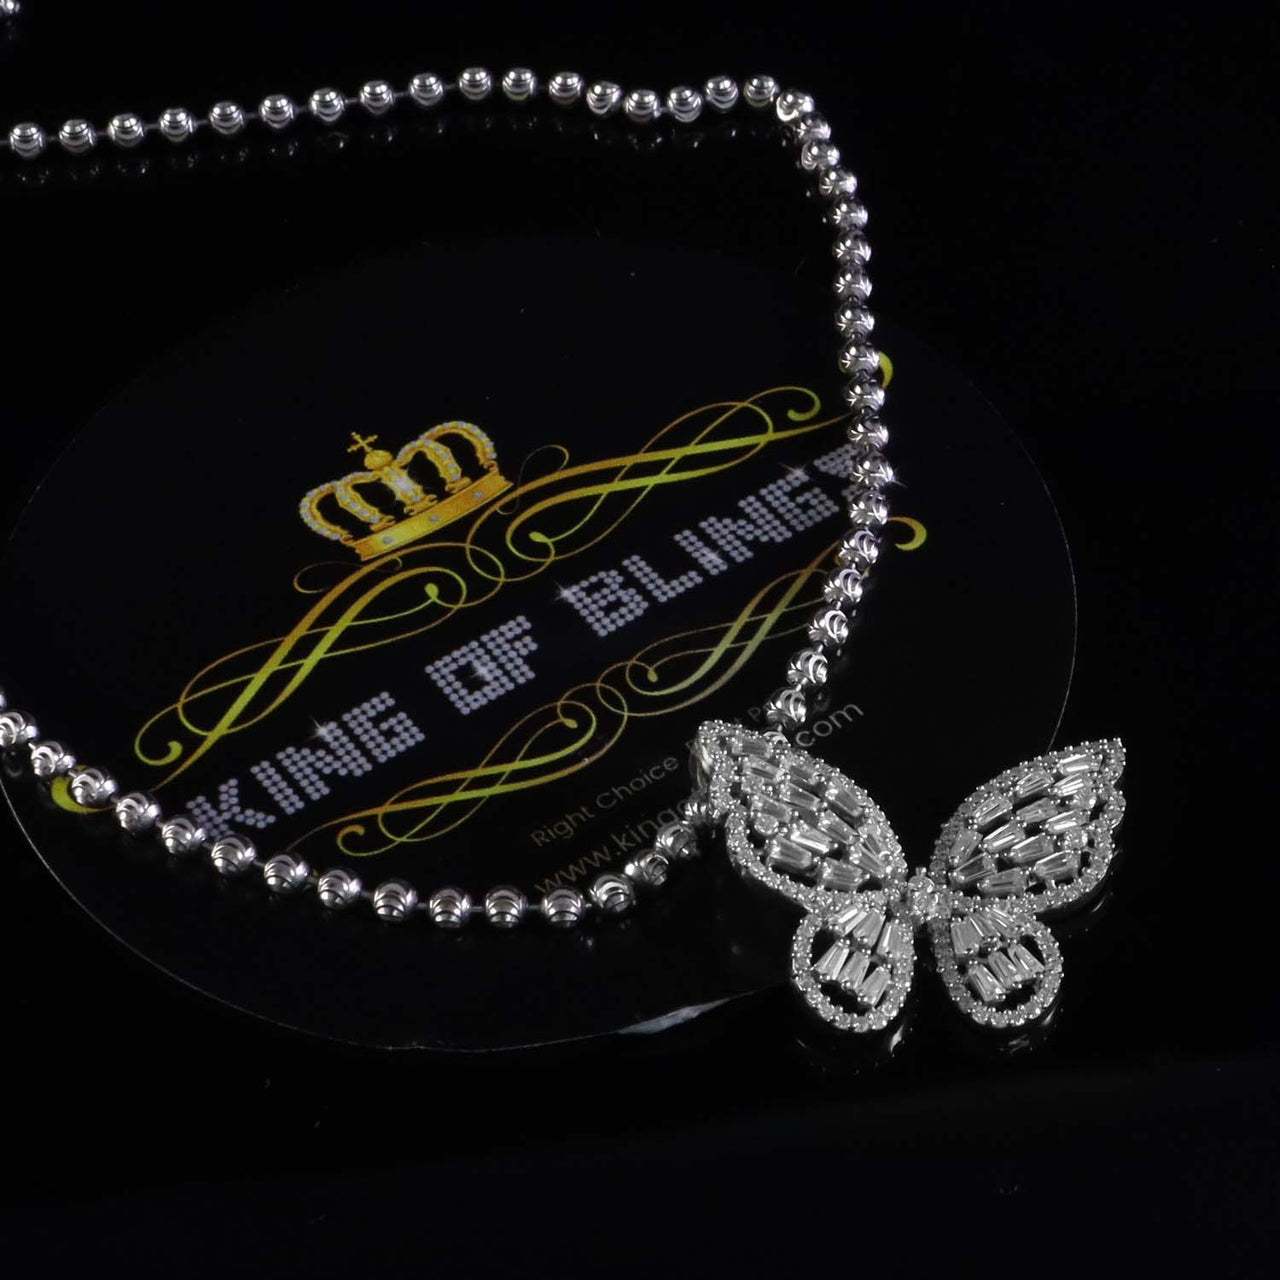 King Of Bling's Men's/Womens 925 Silver White 1.75ct VVS 'D' Moissanite Butterfly Pendant KING OF BLINGS